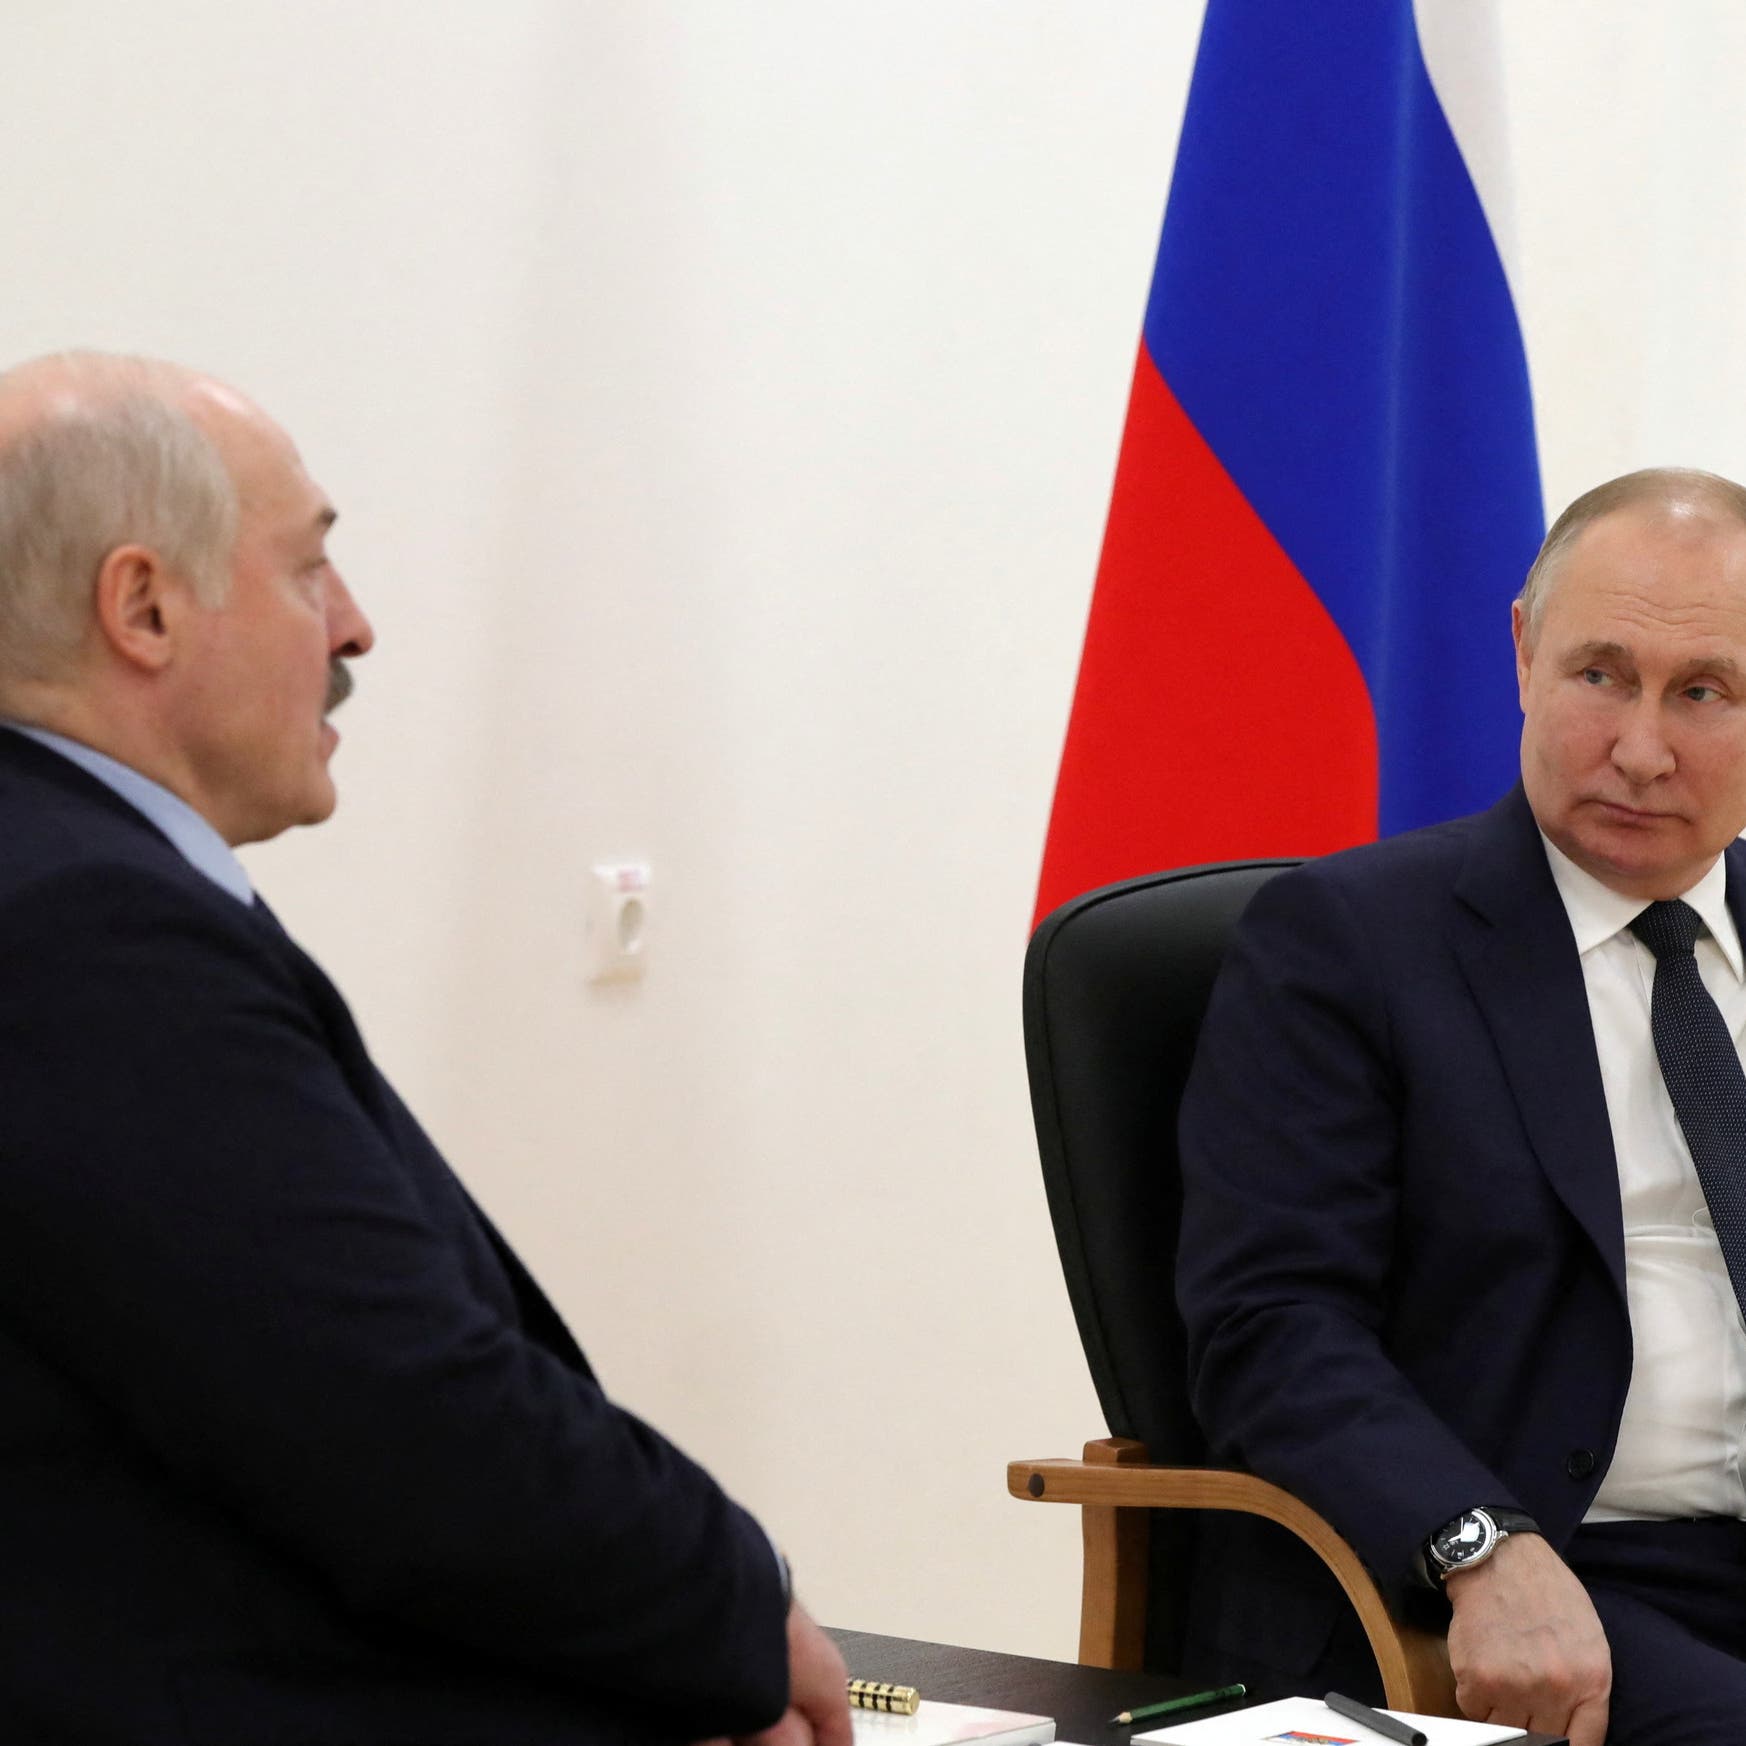 بوتين يزور بيلاروسيا الاثنين لإجراء محادثات مع لوكاشينكو